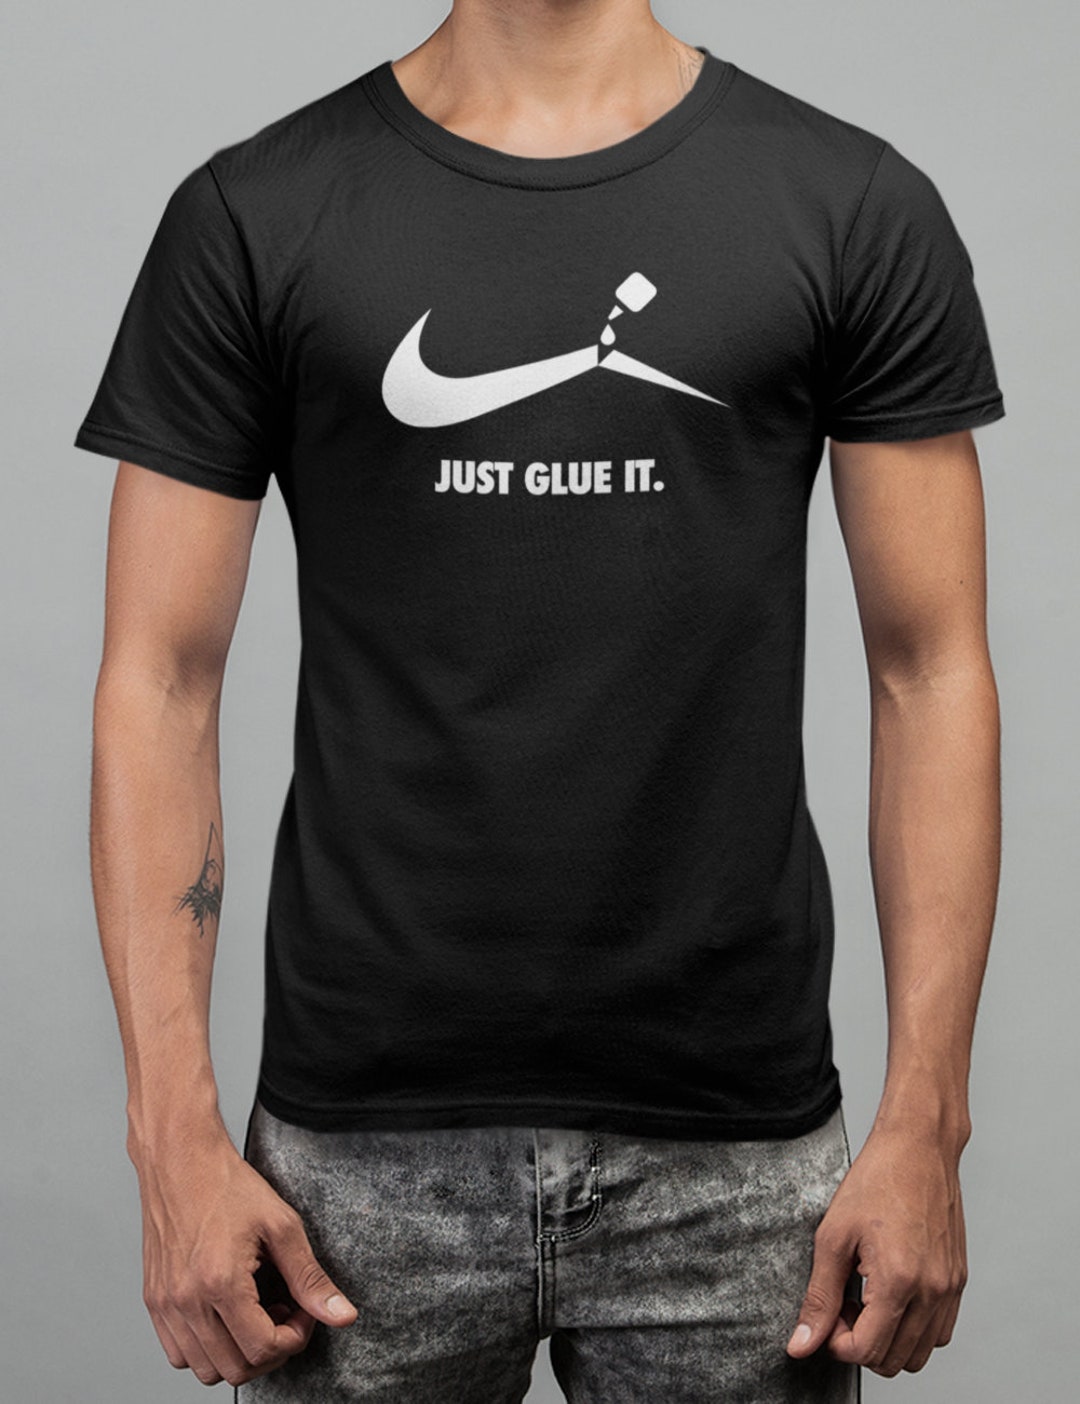 Nike Logo Parody T Shirt Funny Nike Tshirt Just Glue - Etsy